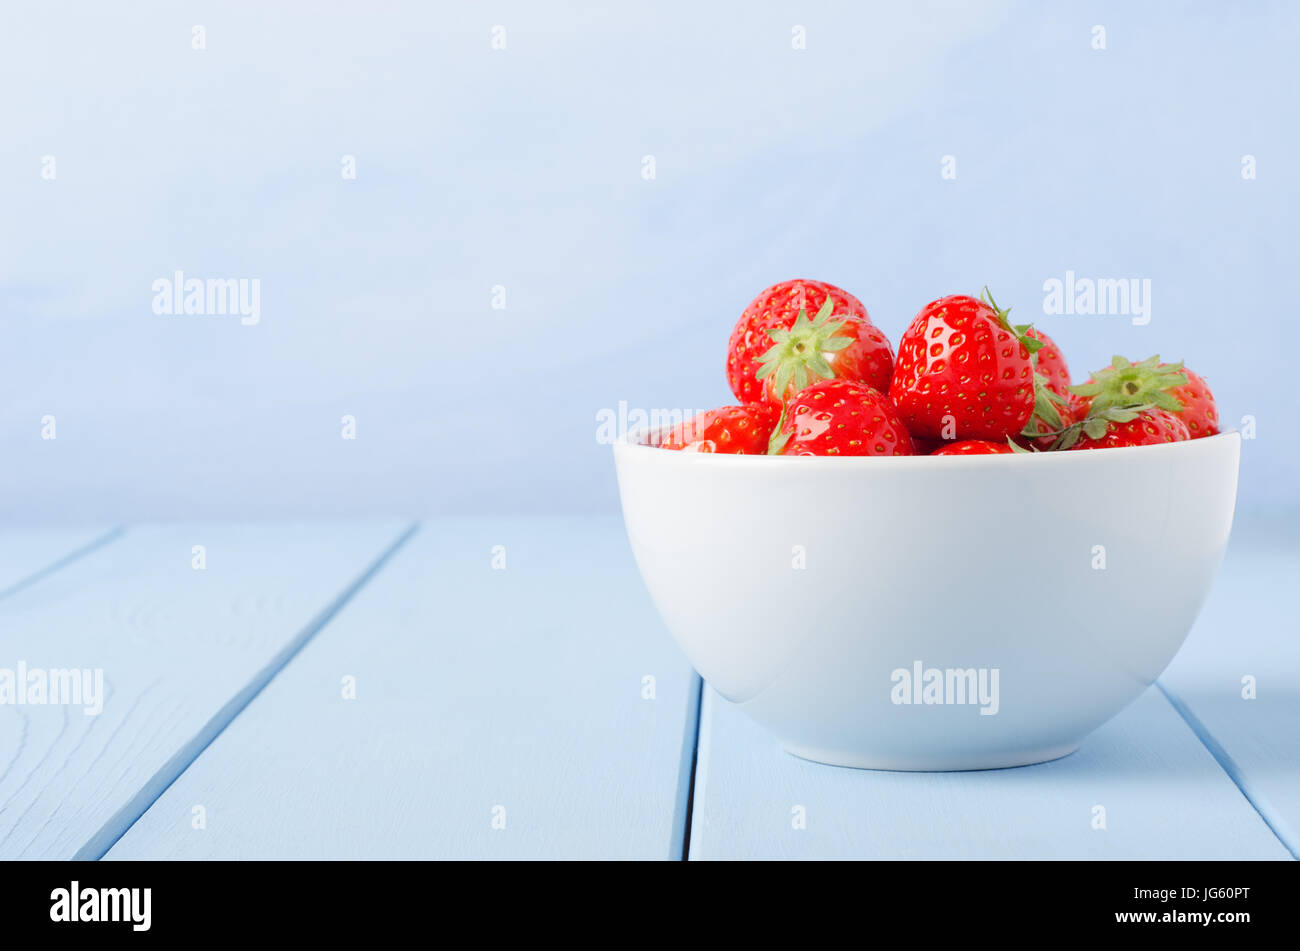 Eine enge, Auge Ebene Seitenansicht einer Weißware Schüssel Erdbeeren auf der rechten Seite des Rahmens, auf einem leichten blau lackierten Holzbohle Tisch mit blauen backgr Stockfoto